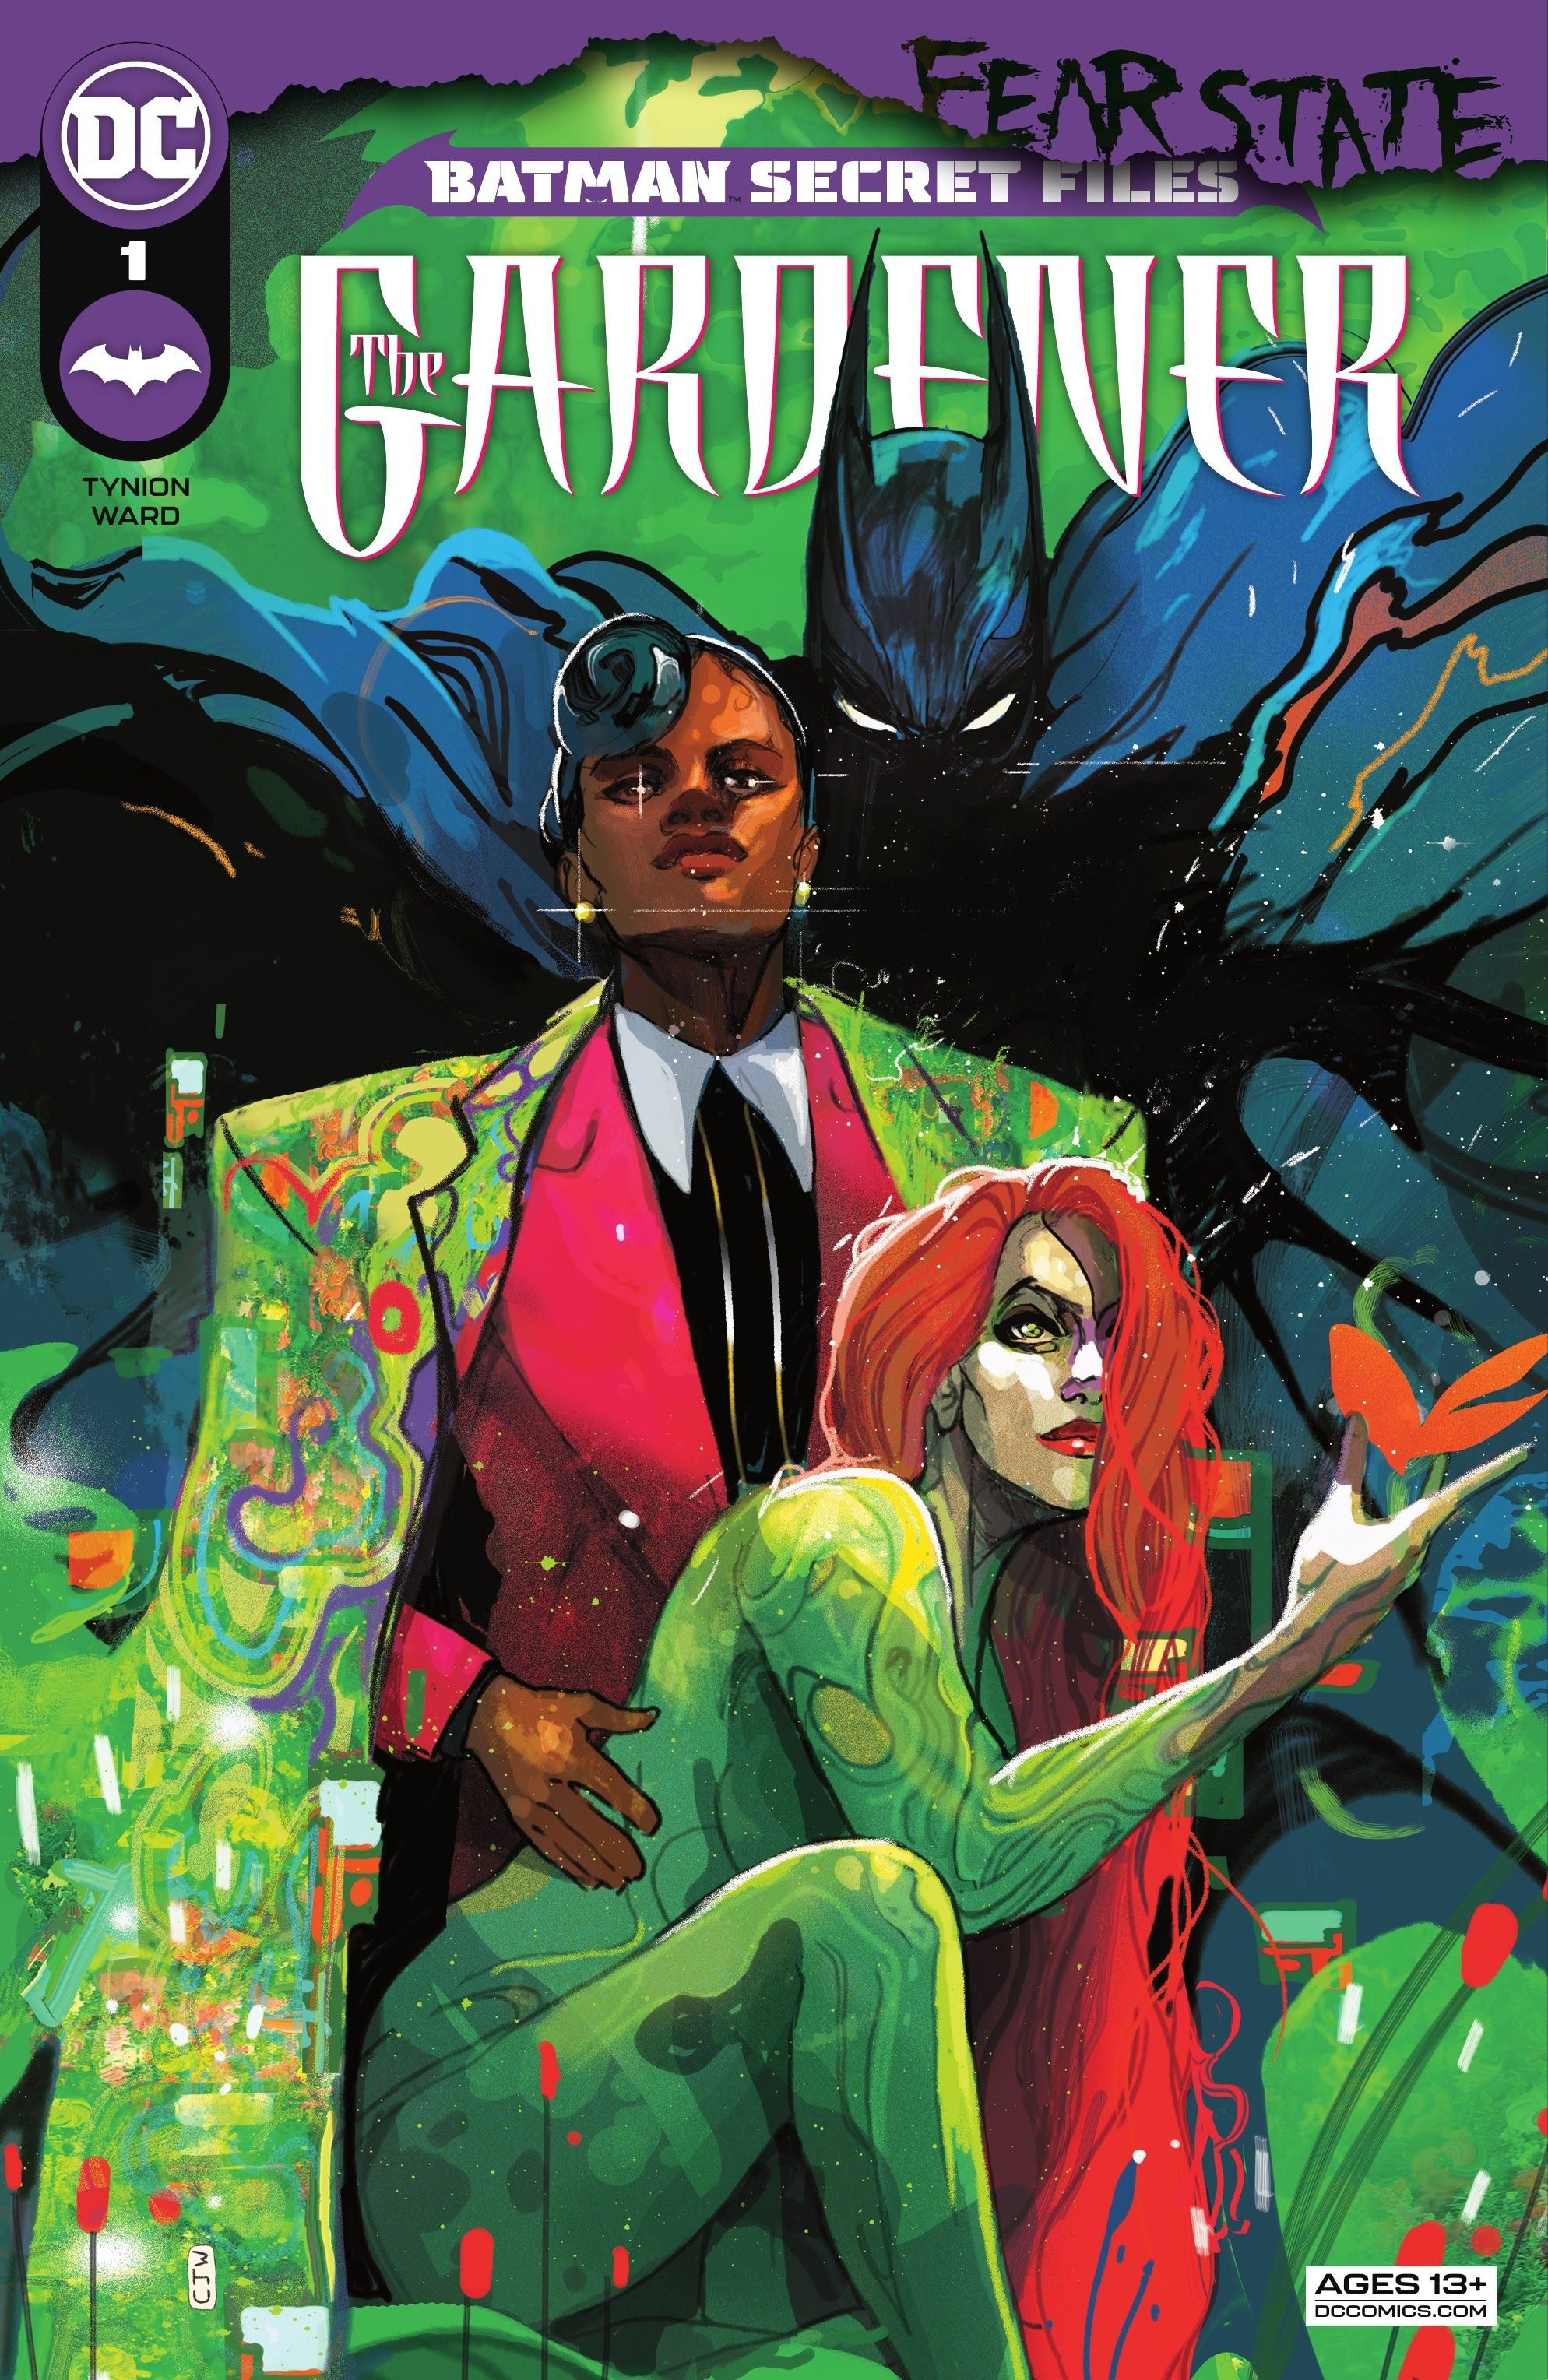 The Gardener and Poison Ivy on the cover of Batman Secret Files: Gardener #1